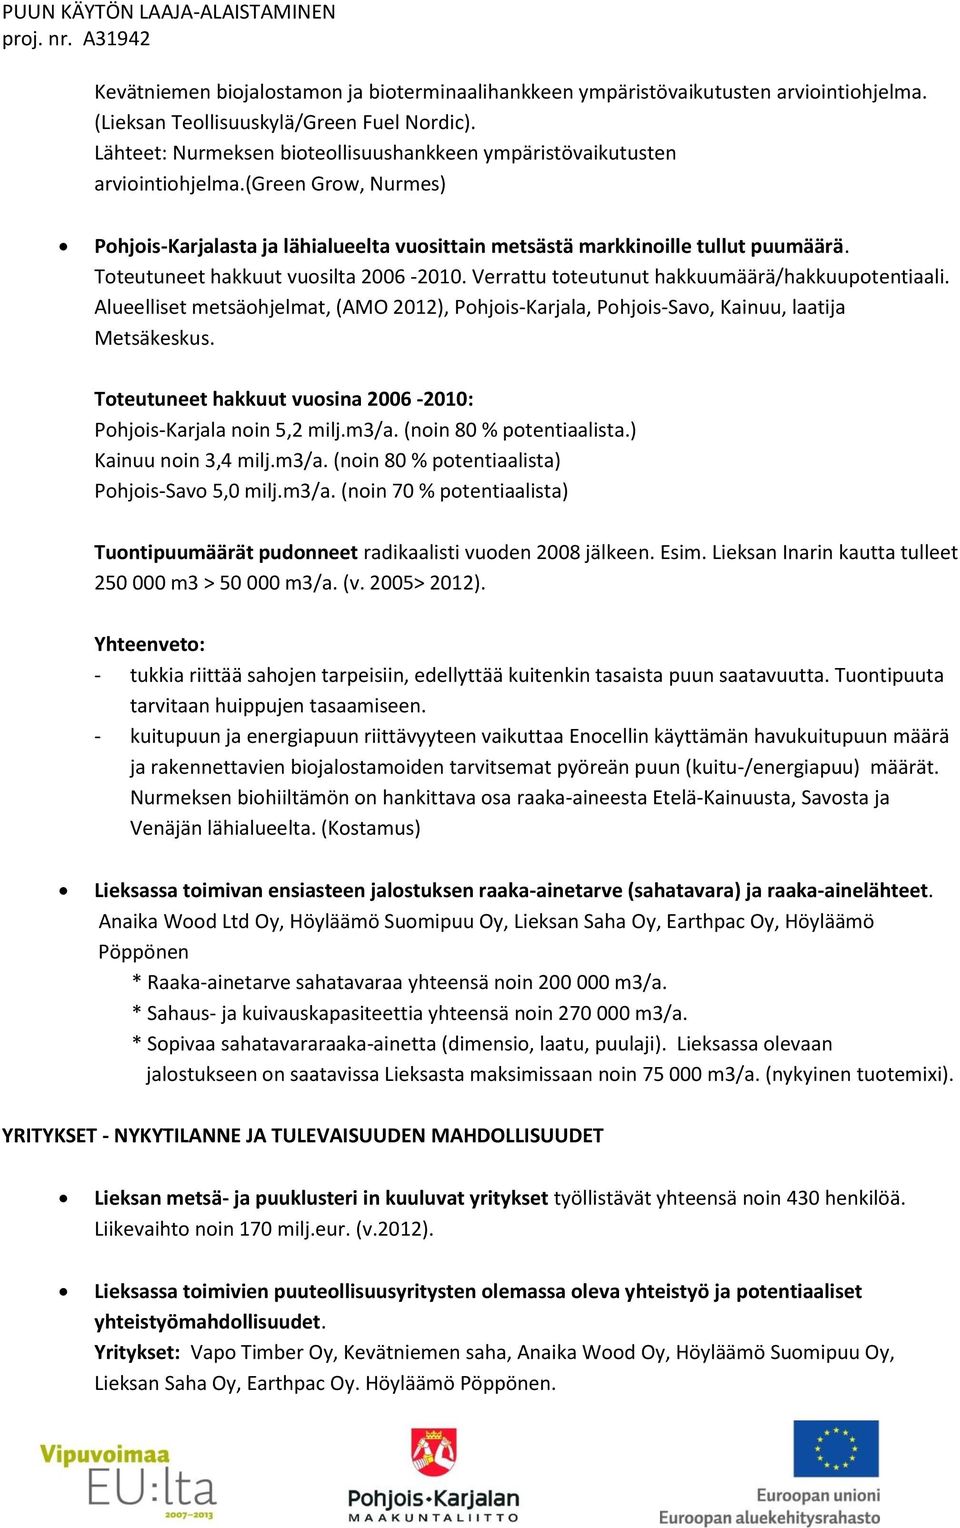 Toteutuneet hakkuut vuosilta 2006-2010. Verrattu toteutunut hakkuumäärä/hakkuupotentiaali. Alueelliset metsäohjelmat, (AMO 2012), Pohjois-Karjala, Pohjois-Savo, Kainuu, laatija Metsäkeskus.